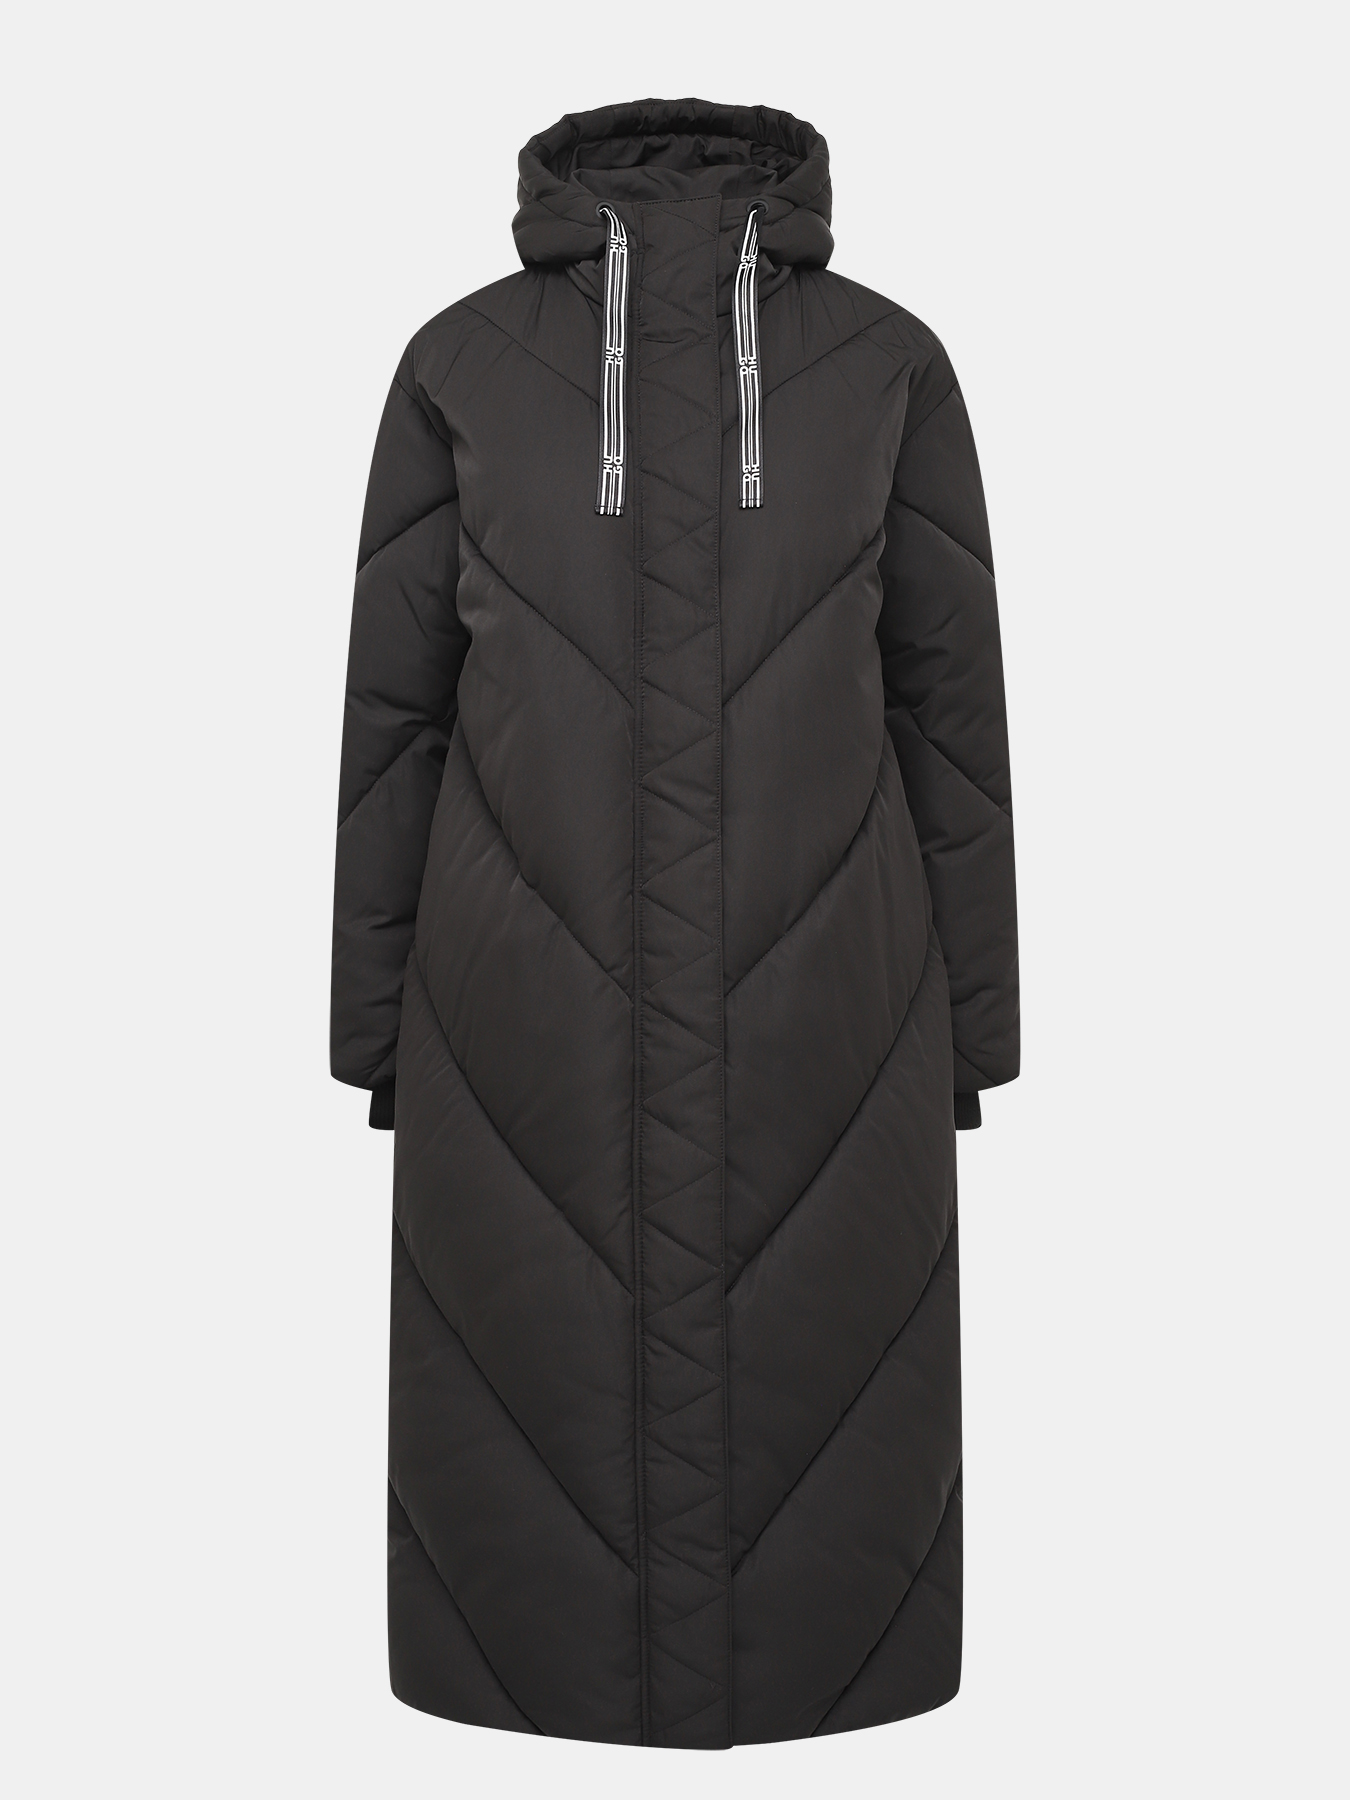 Пальто осеннее Favella HUGO 427453-043, цвет черный, размер 44-46